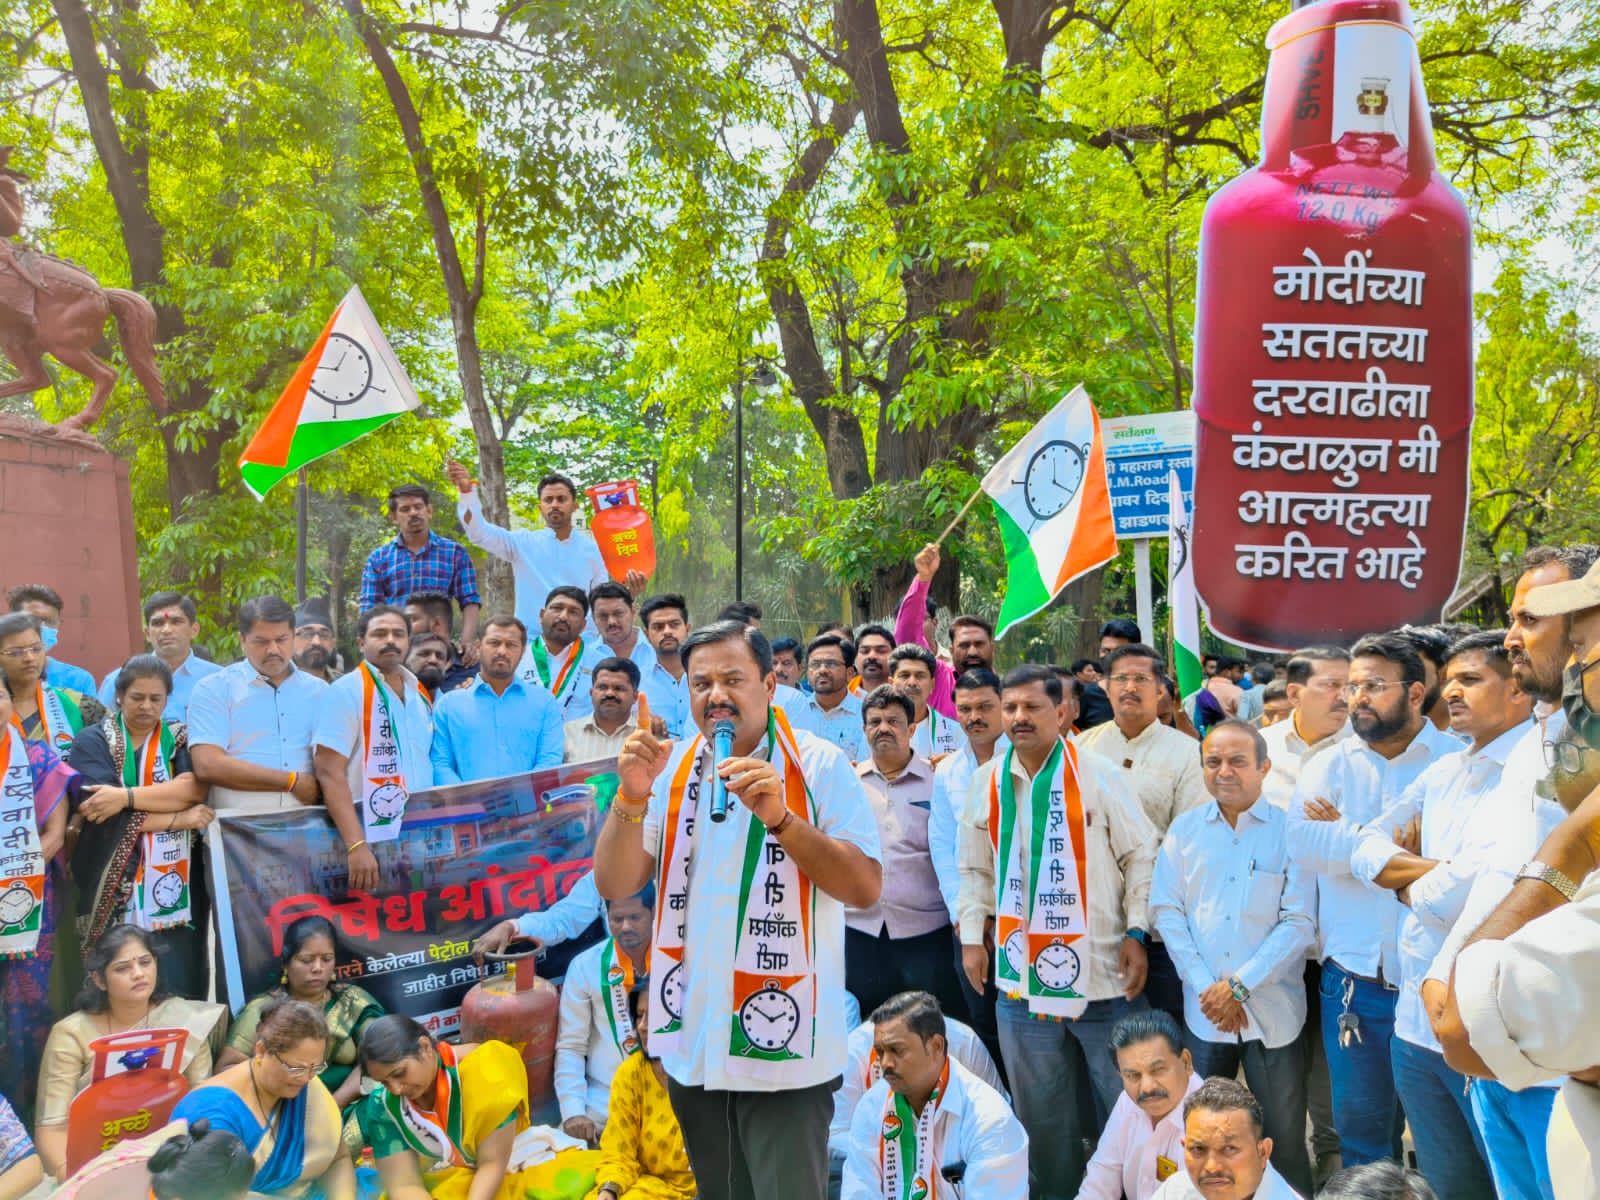 Protest against fuel and diesel price hike : इंधन व डिझेल दरवाढीच्या विरोधात राष्ट्रवादी काँग्रेस पार्टीच्या वतीने निषेध आंदोलन